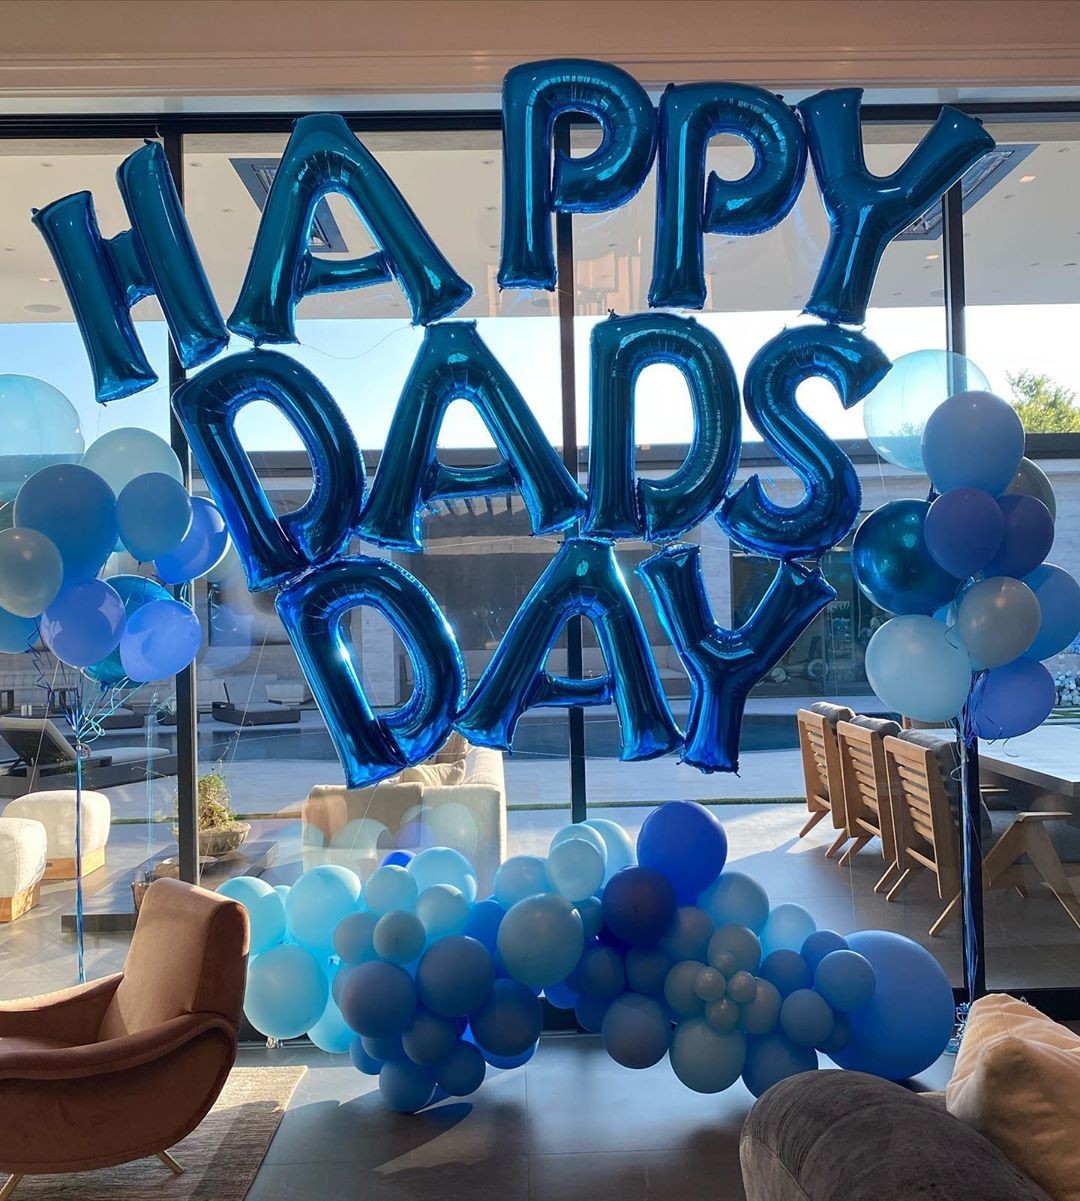 Festa do Dia dos Pais feita por Kylie Jenner em homenagem a Travis Scott (Foto: Instagram)